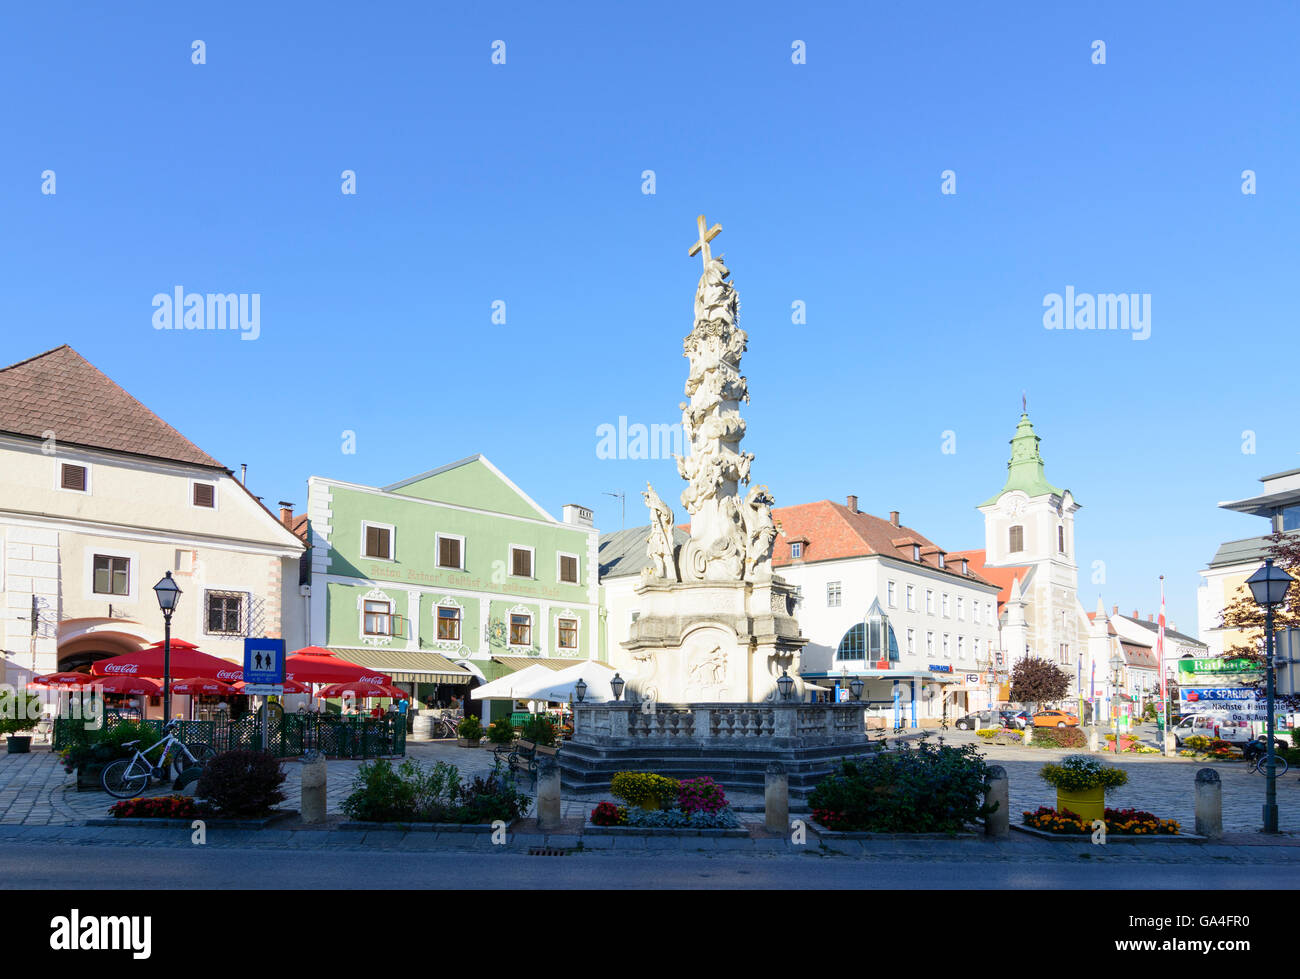 Zwettl Trinity Square avec la colonne de la Trinité , l'hôtel de ville droit Autriche Niederösterreich, Autriche Basse-autriche Banque D'Images